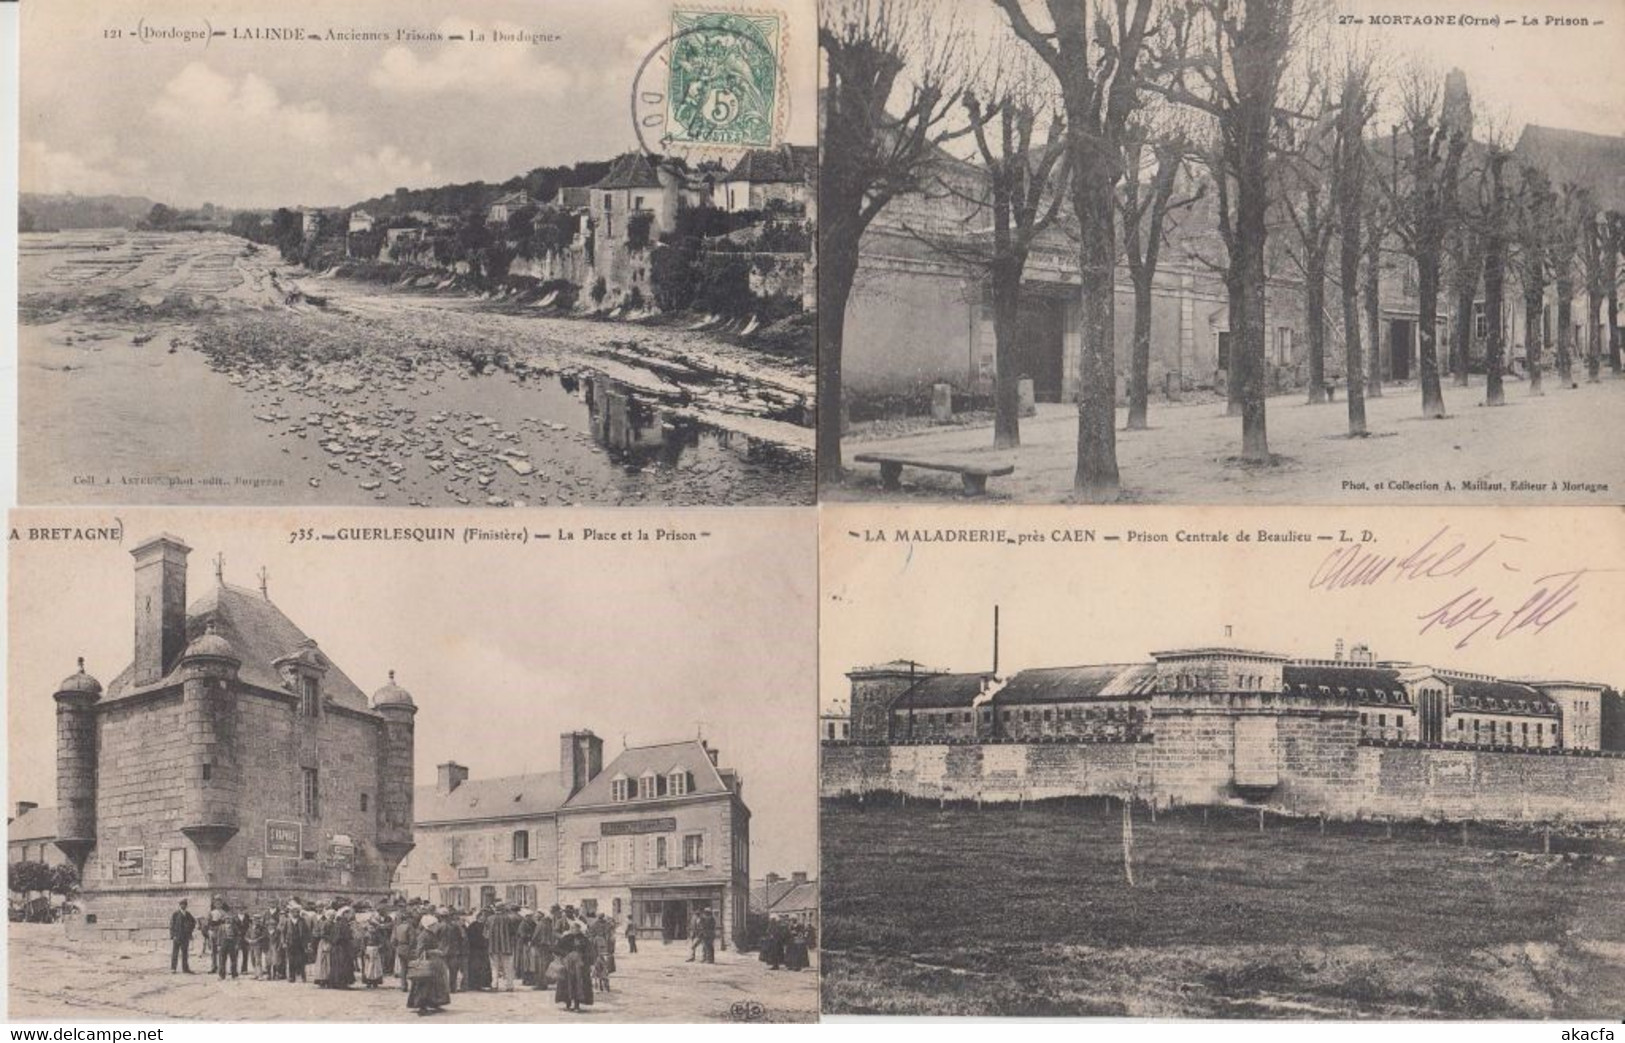 PRISONS FRANCE 62 Vintage Postcards pre-1940 (L2856)